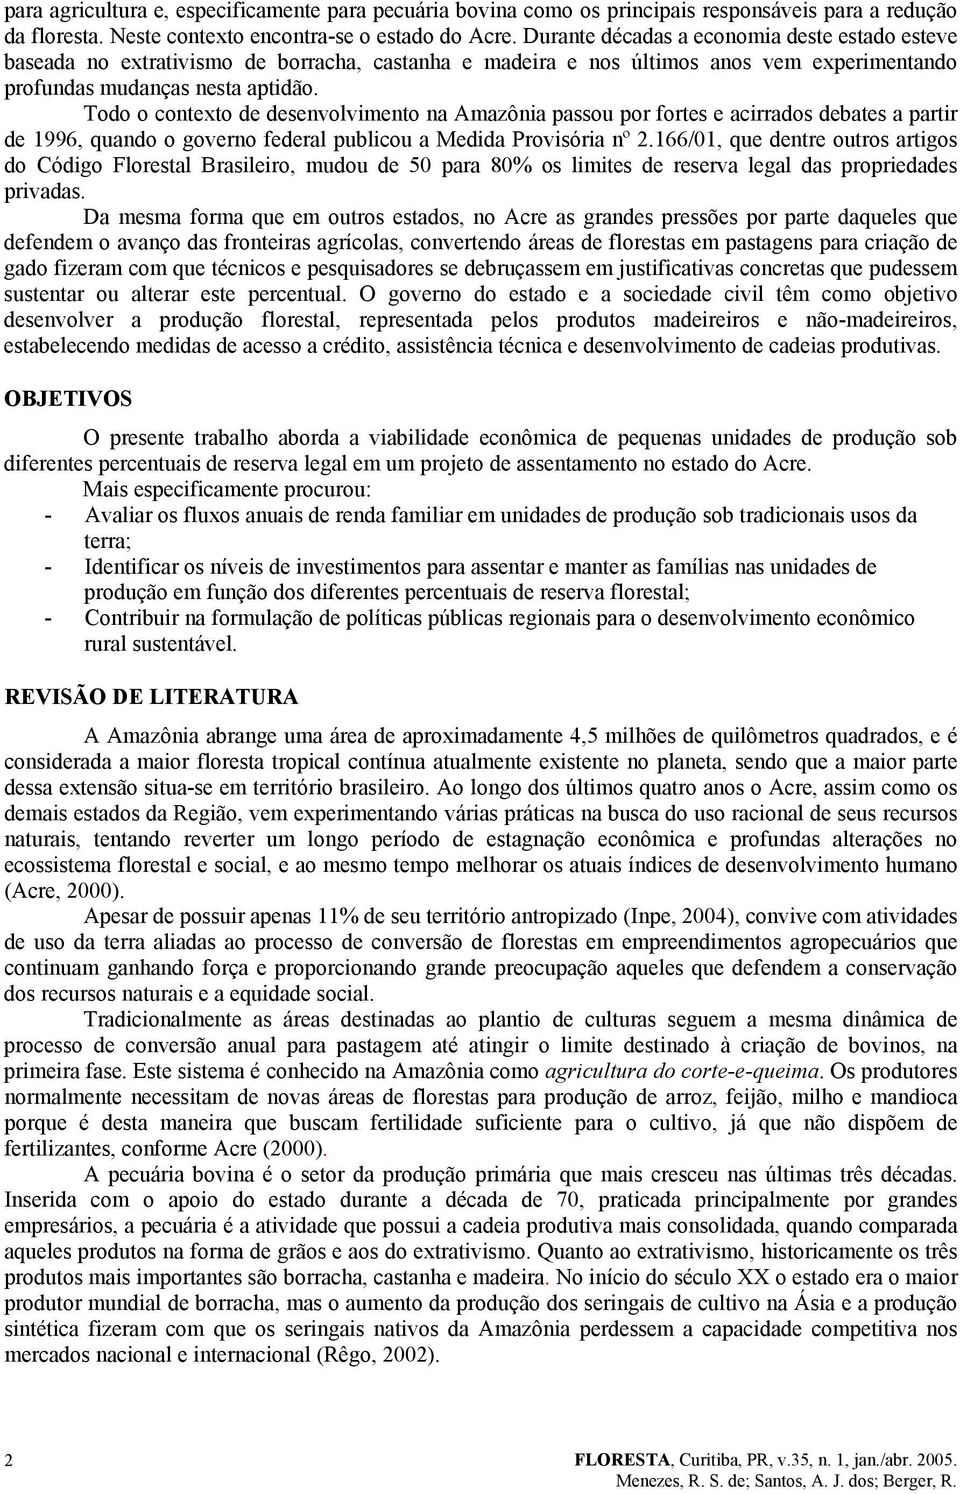 Todo o cotexto de desevolvimeto a Amazôia passou por fortes e acirrados debates a partir de 1996, quado o govero federal publicou a Medida Provisória º 2.